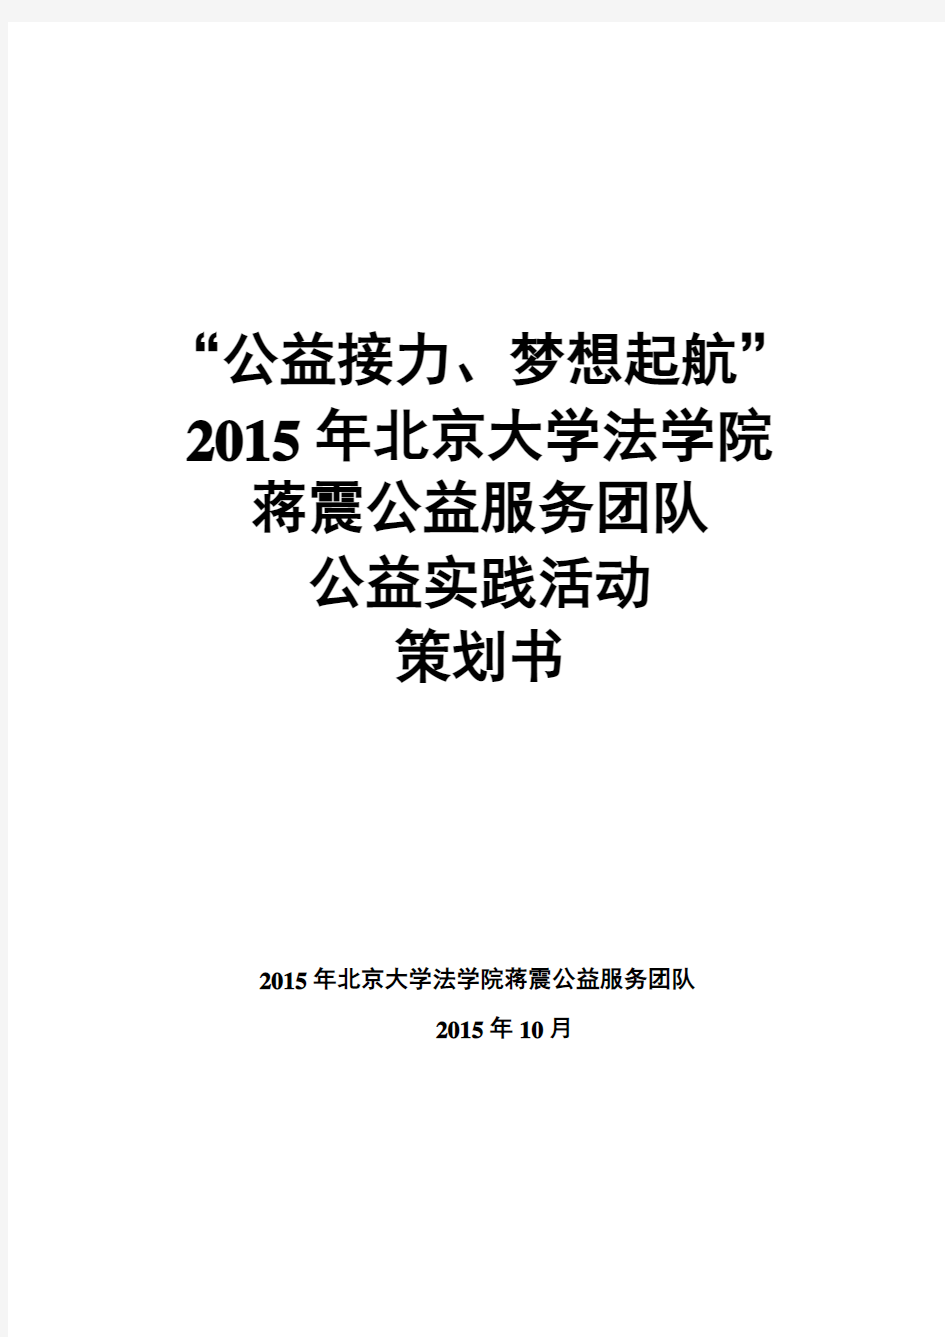 2015年北京大学法学院蒋震公益团队实践活动策划书